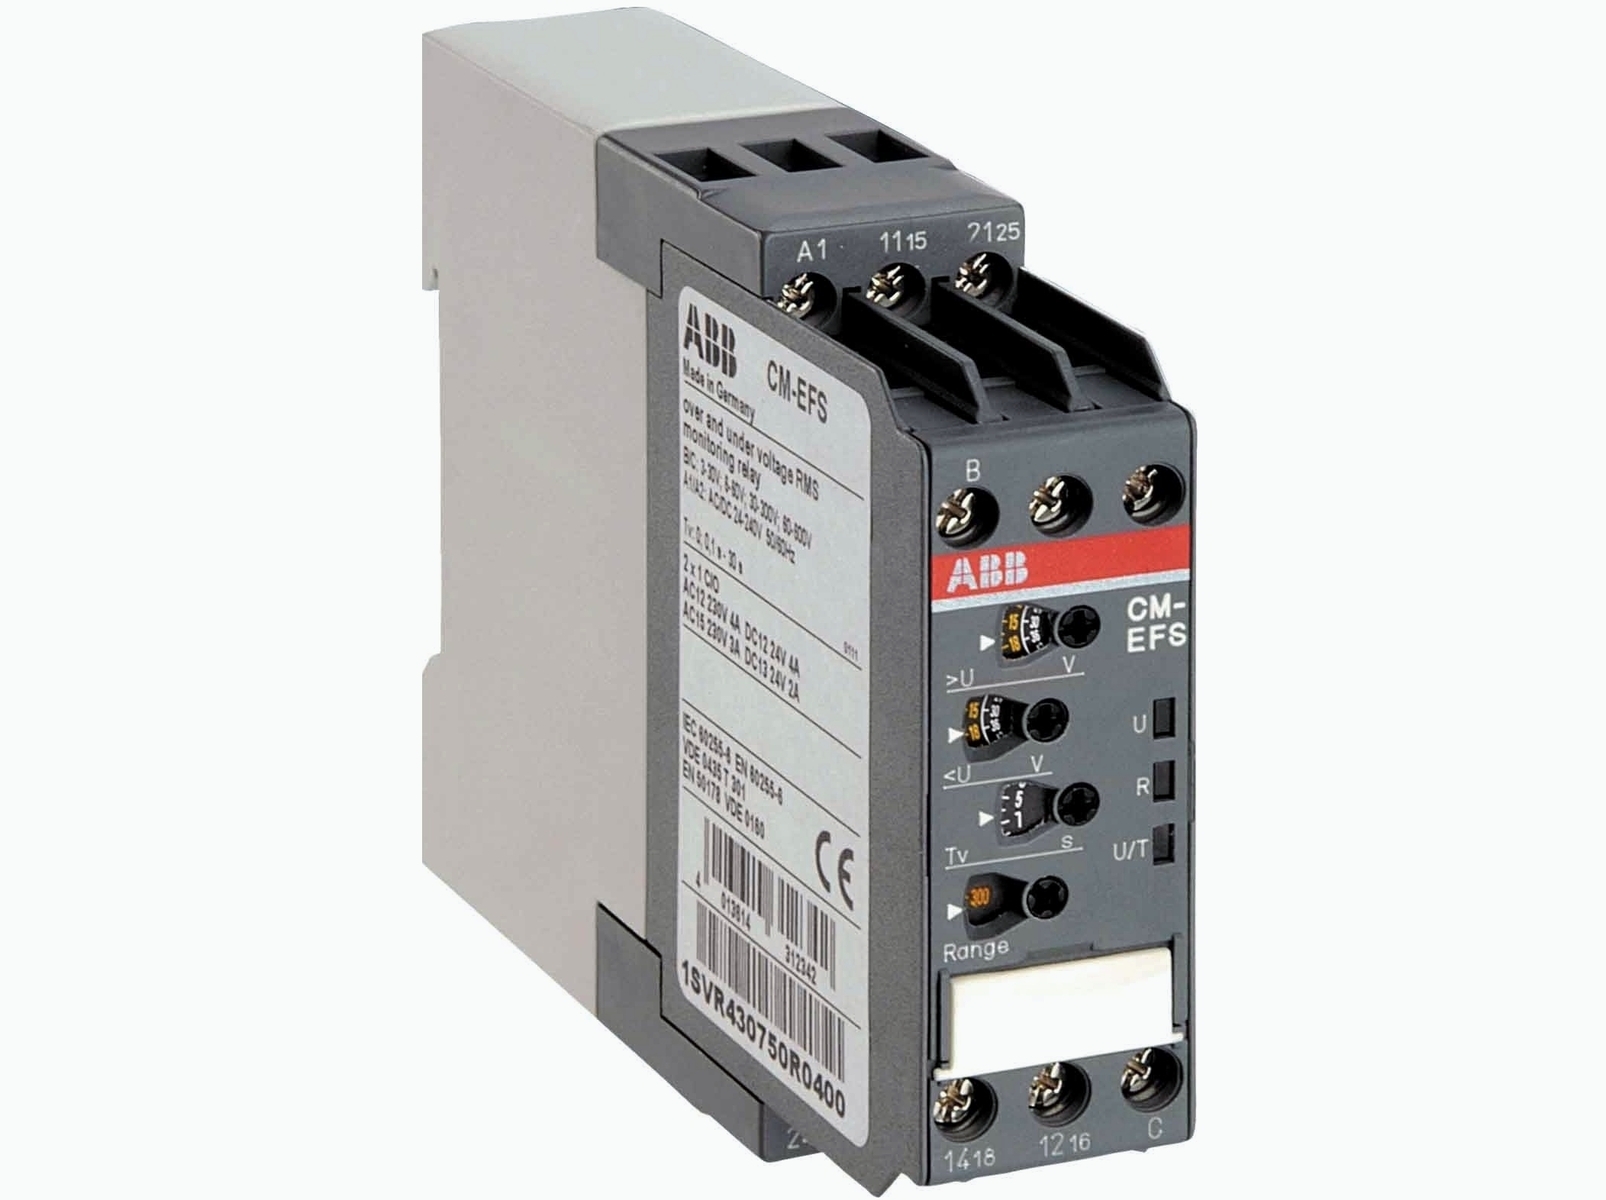  контроля напряжения и тока, 1-фазное, CM-EFS.2, CM-EFS, ABB .